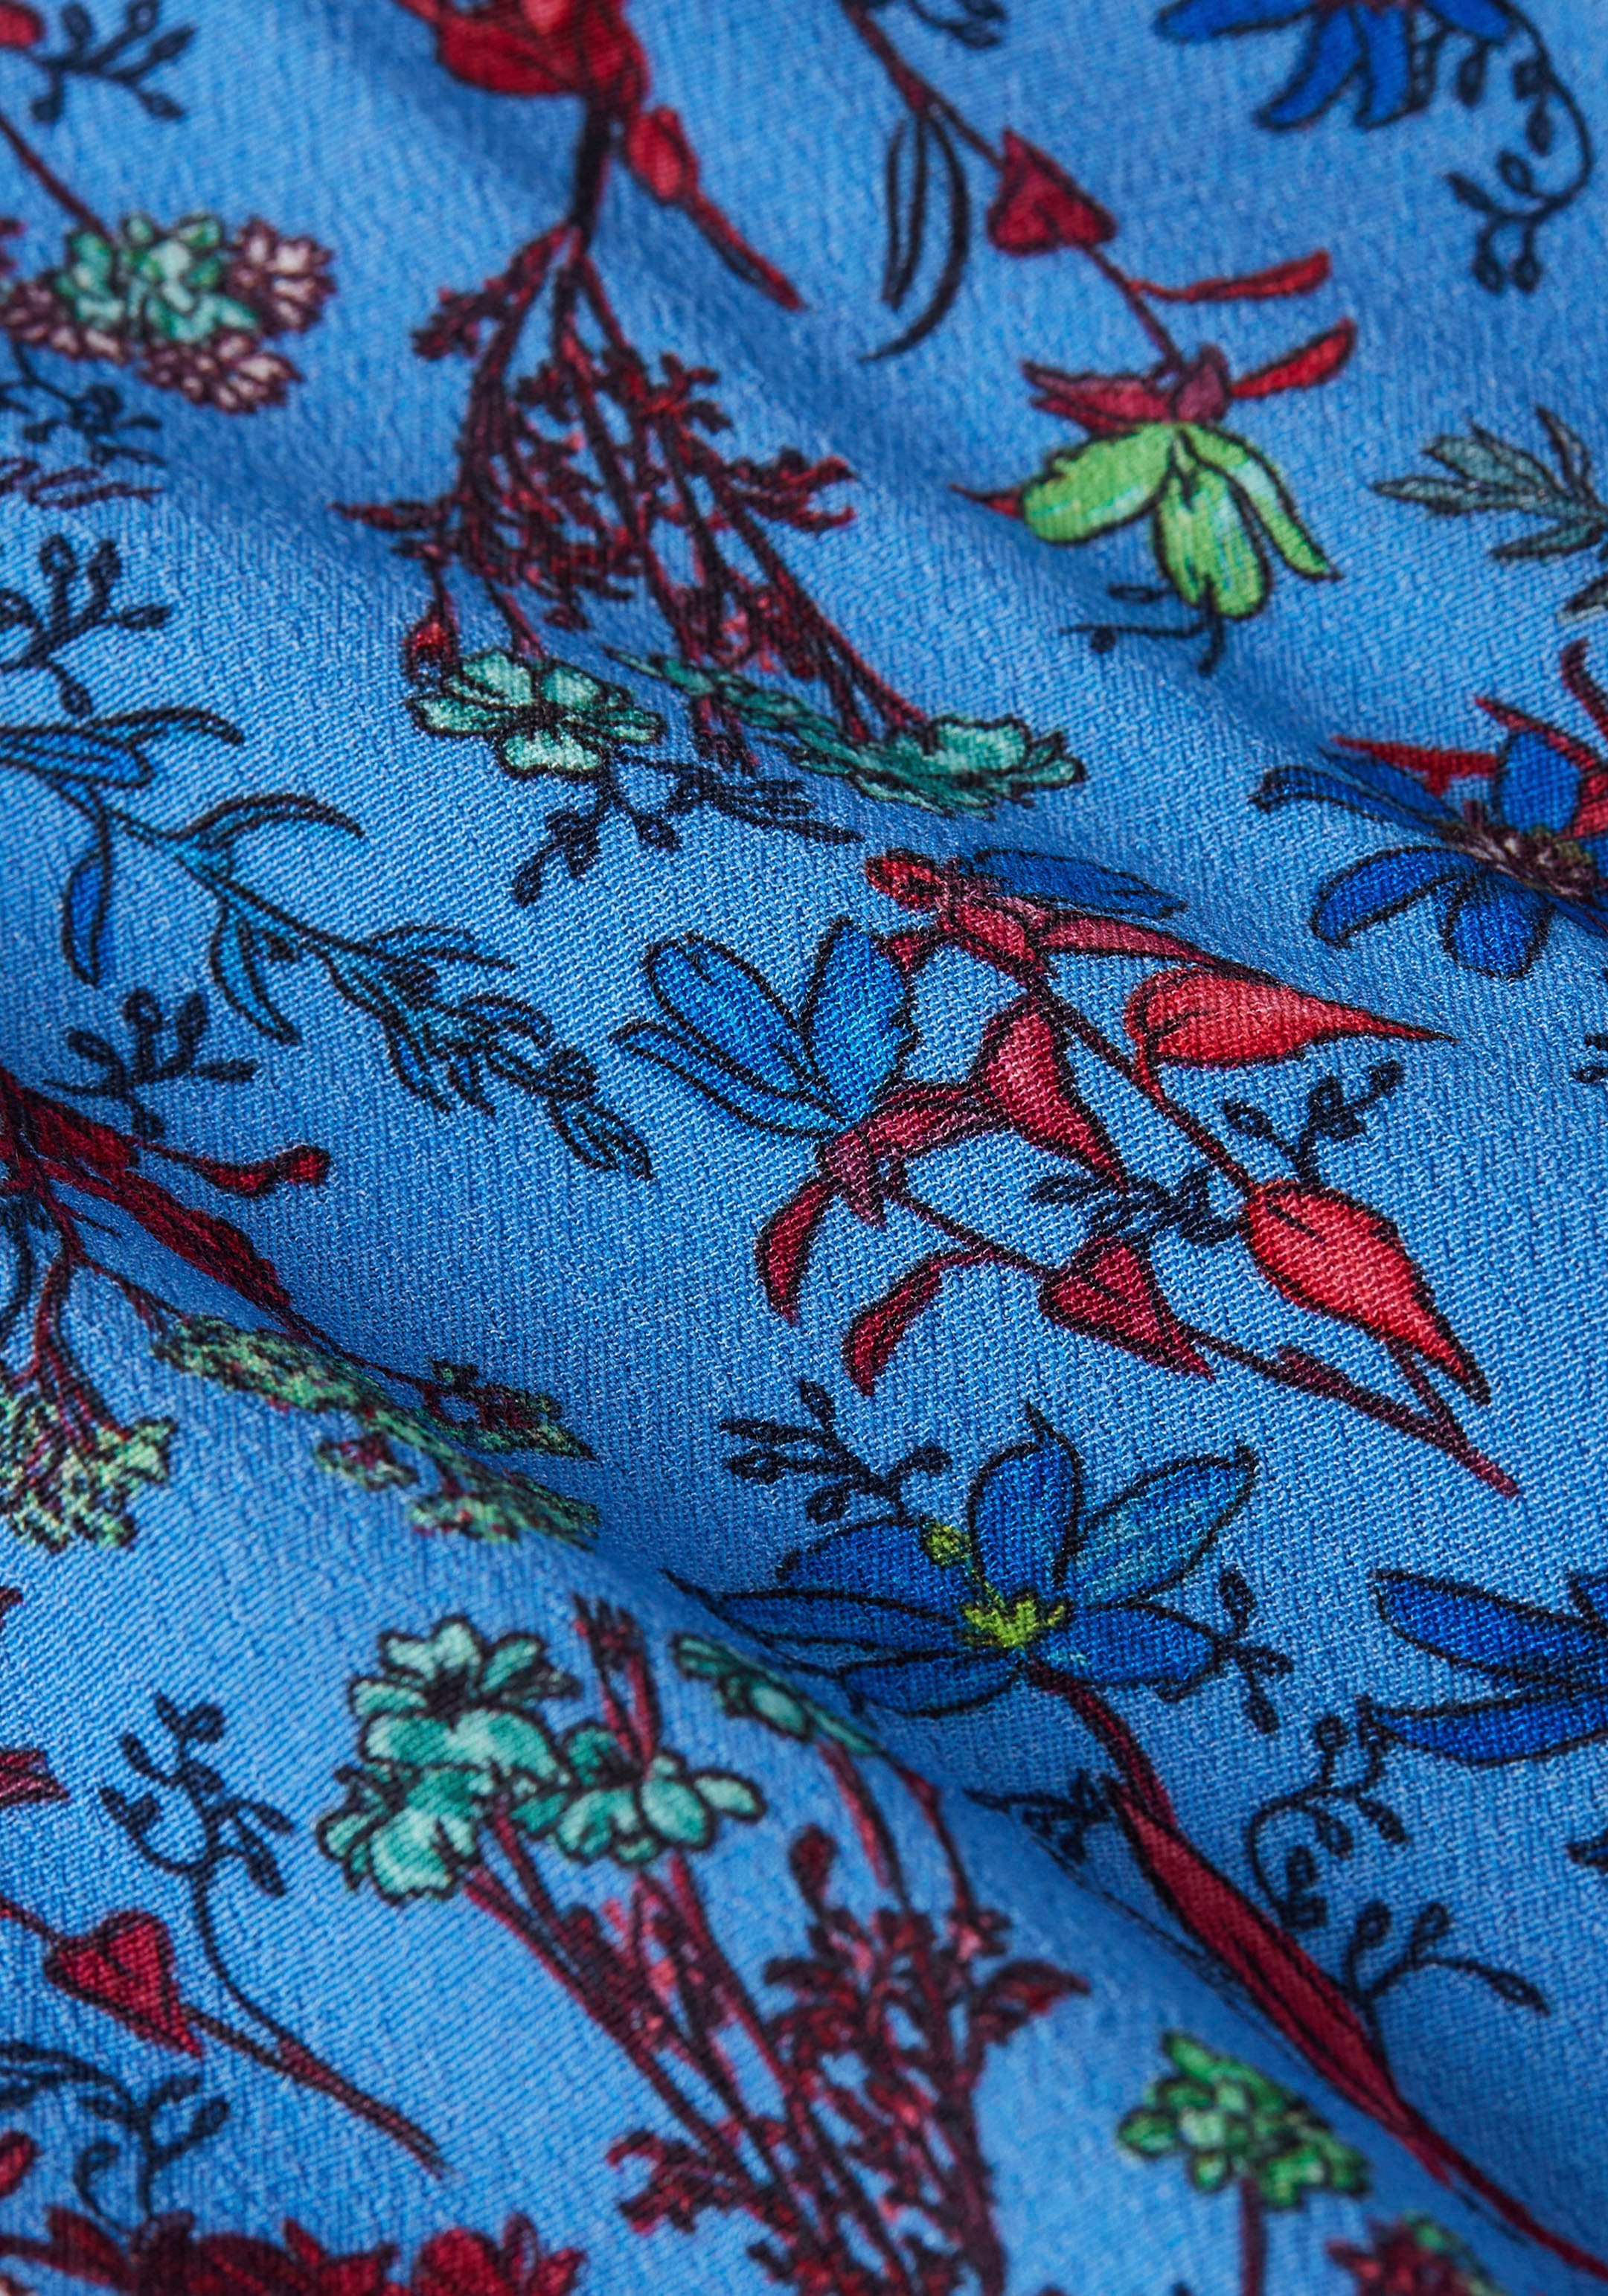 bestellen ♕ in DRESS farbenfrohem Floral-Print LS«, FLORAL SHORT Hilfiger Tommy »VIS Shirtkleid versandkostenfrei